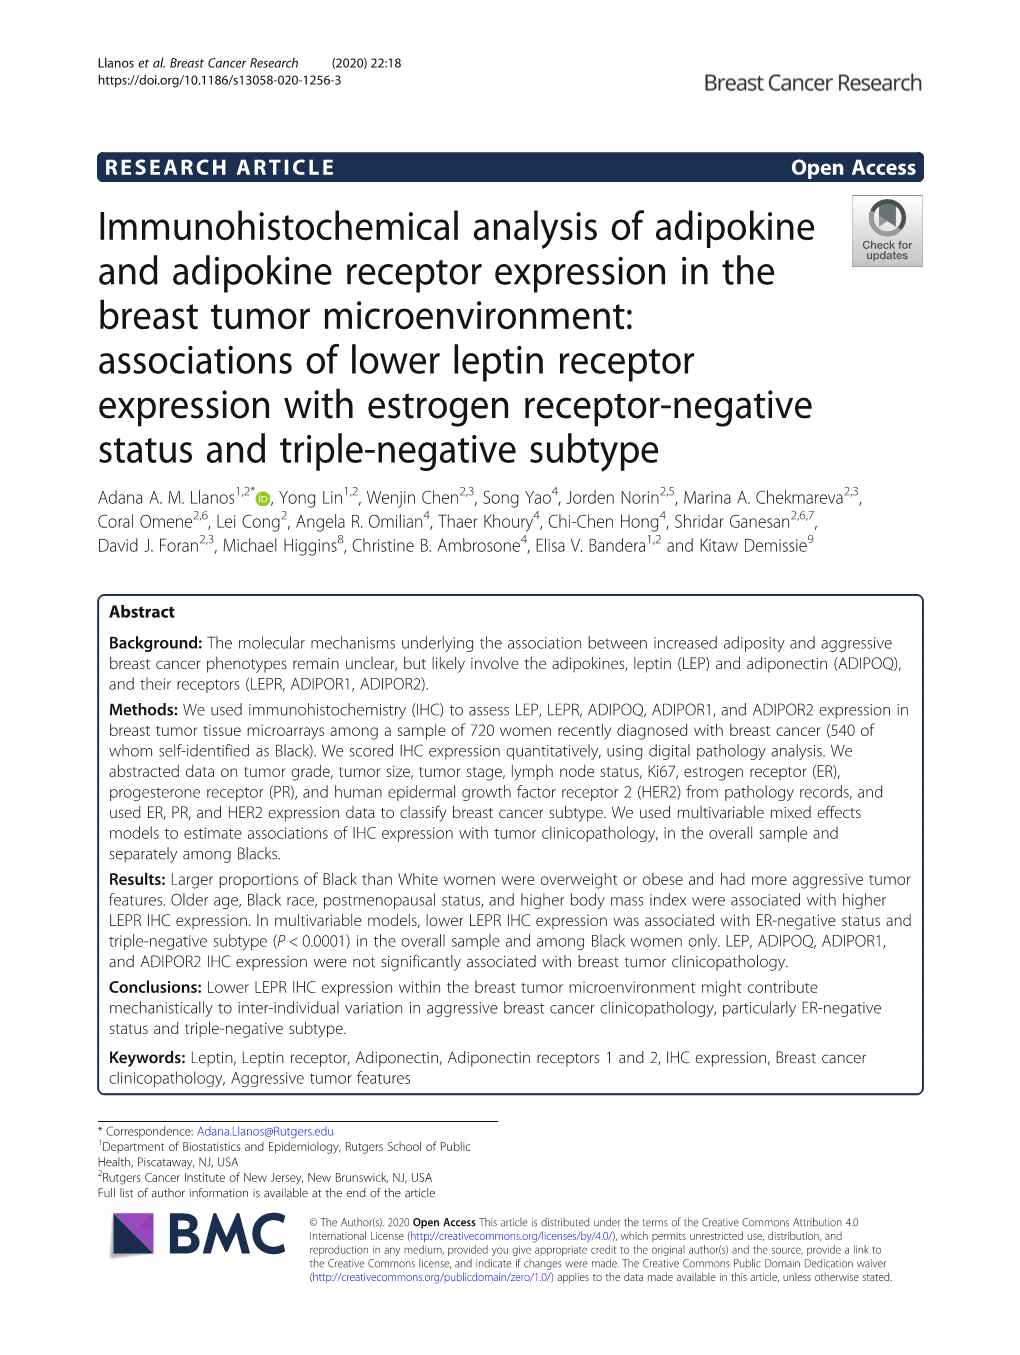 Immunohistochemical Analysis of Adipokine and Adipokine Receptor